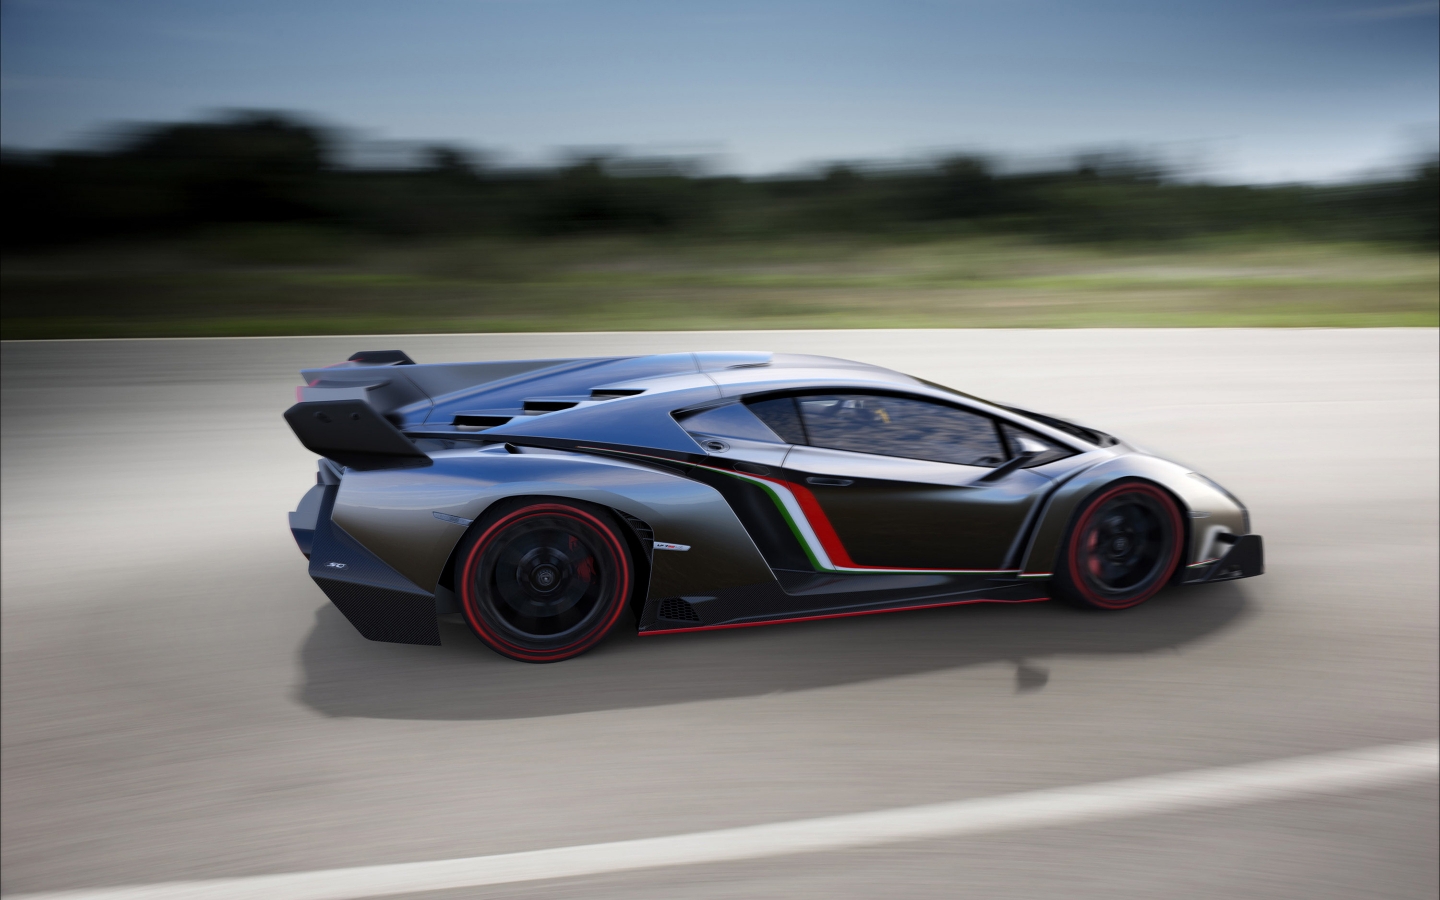 Lamborghini Veneno Speed for 1440 x 900 widescreen resolution